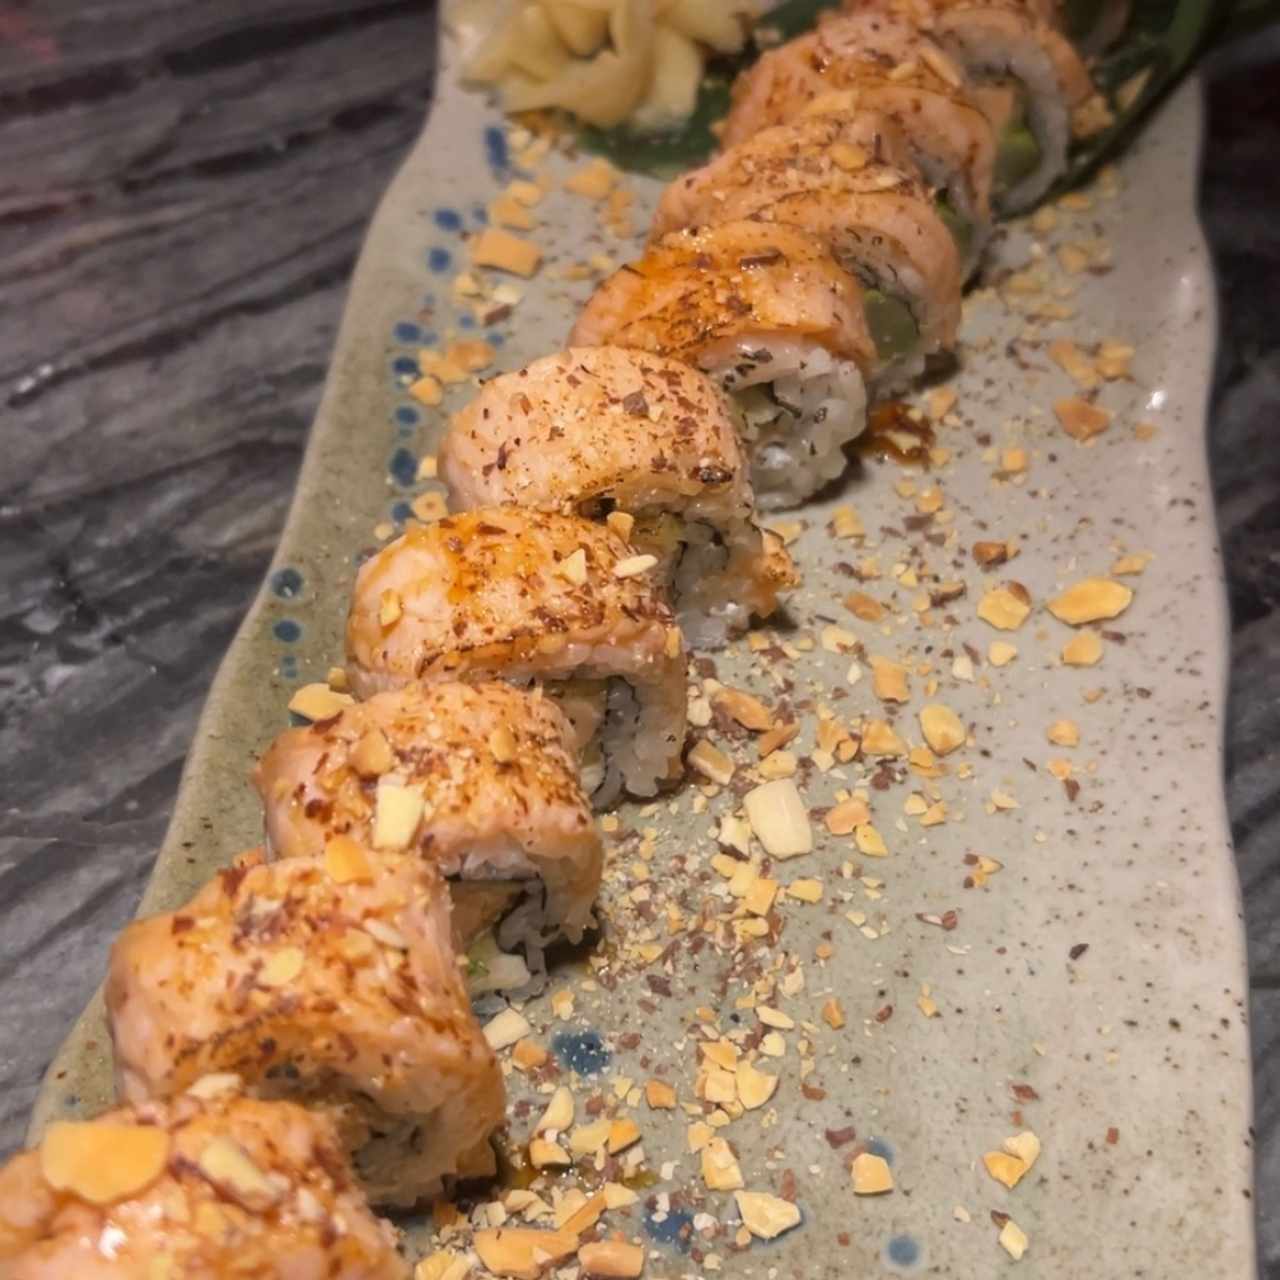 Sushi Bar - Kaori